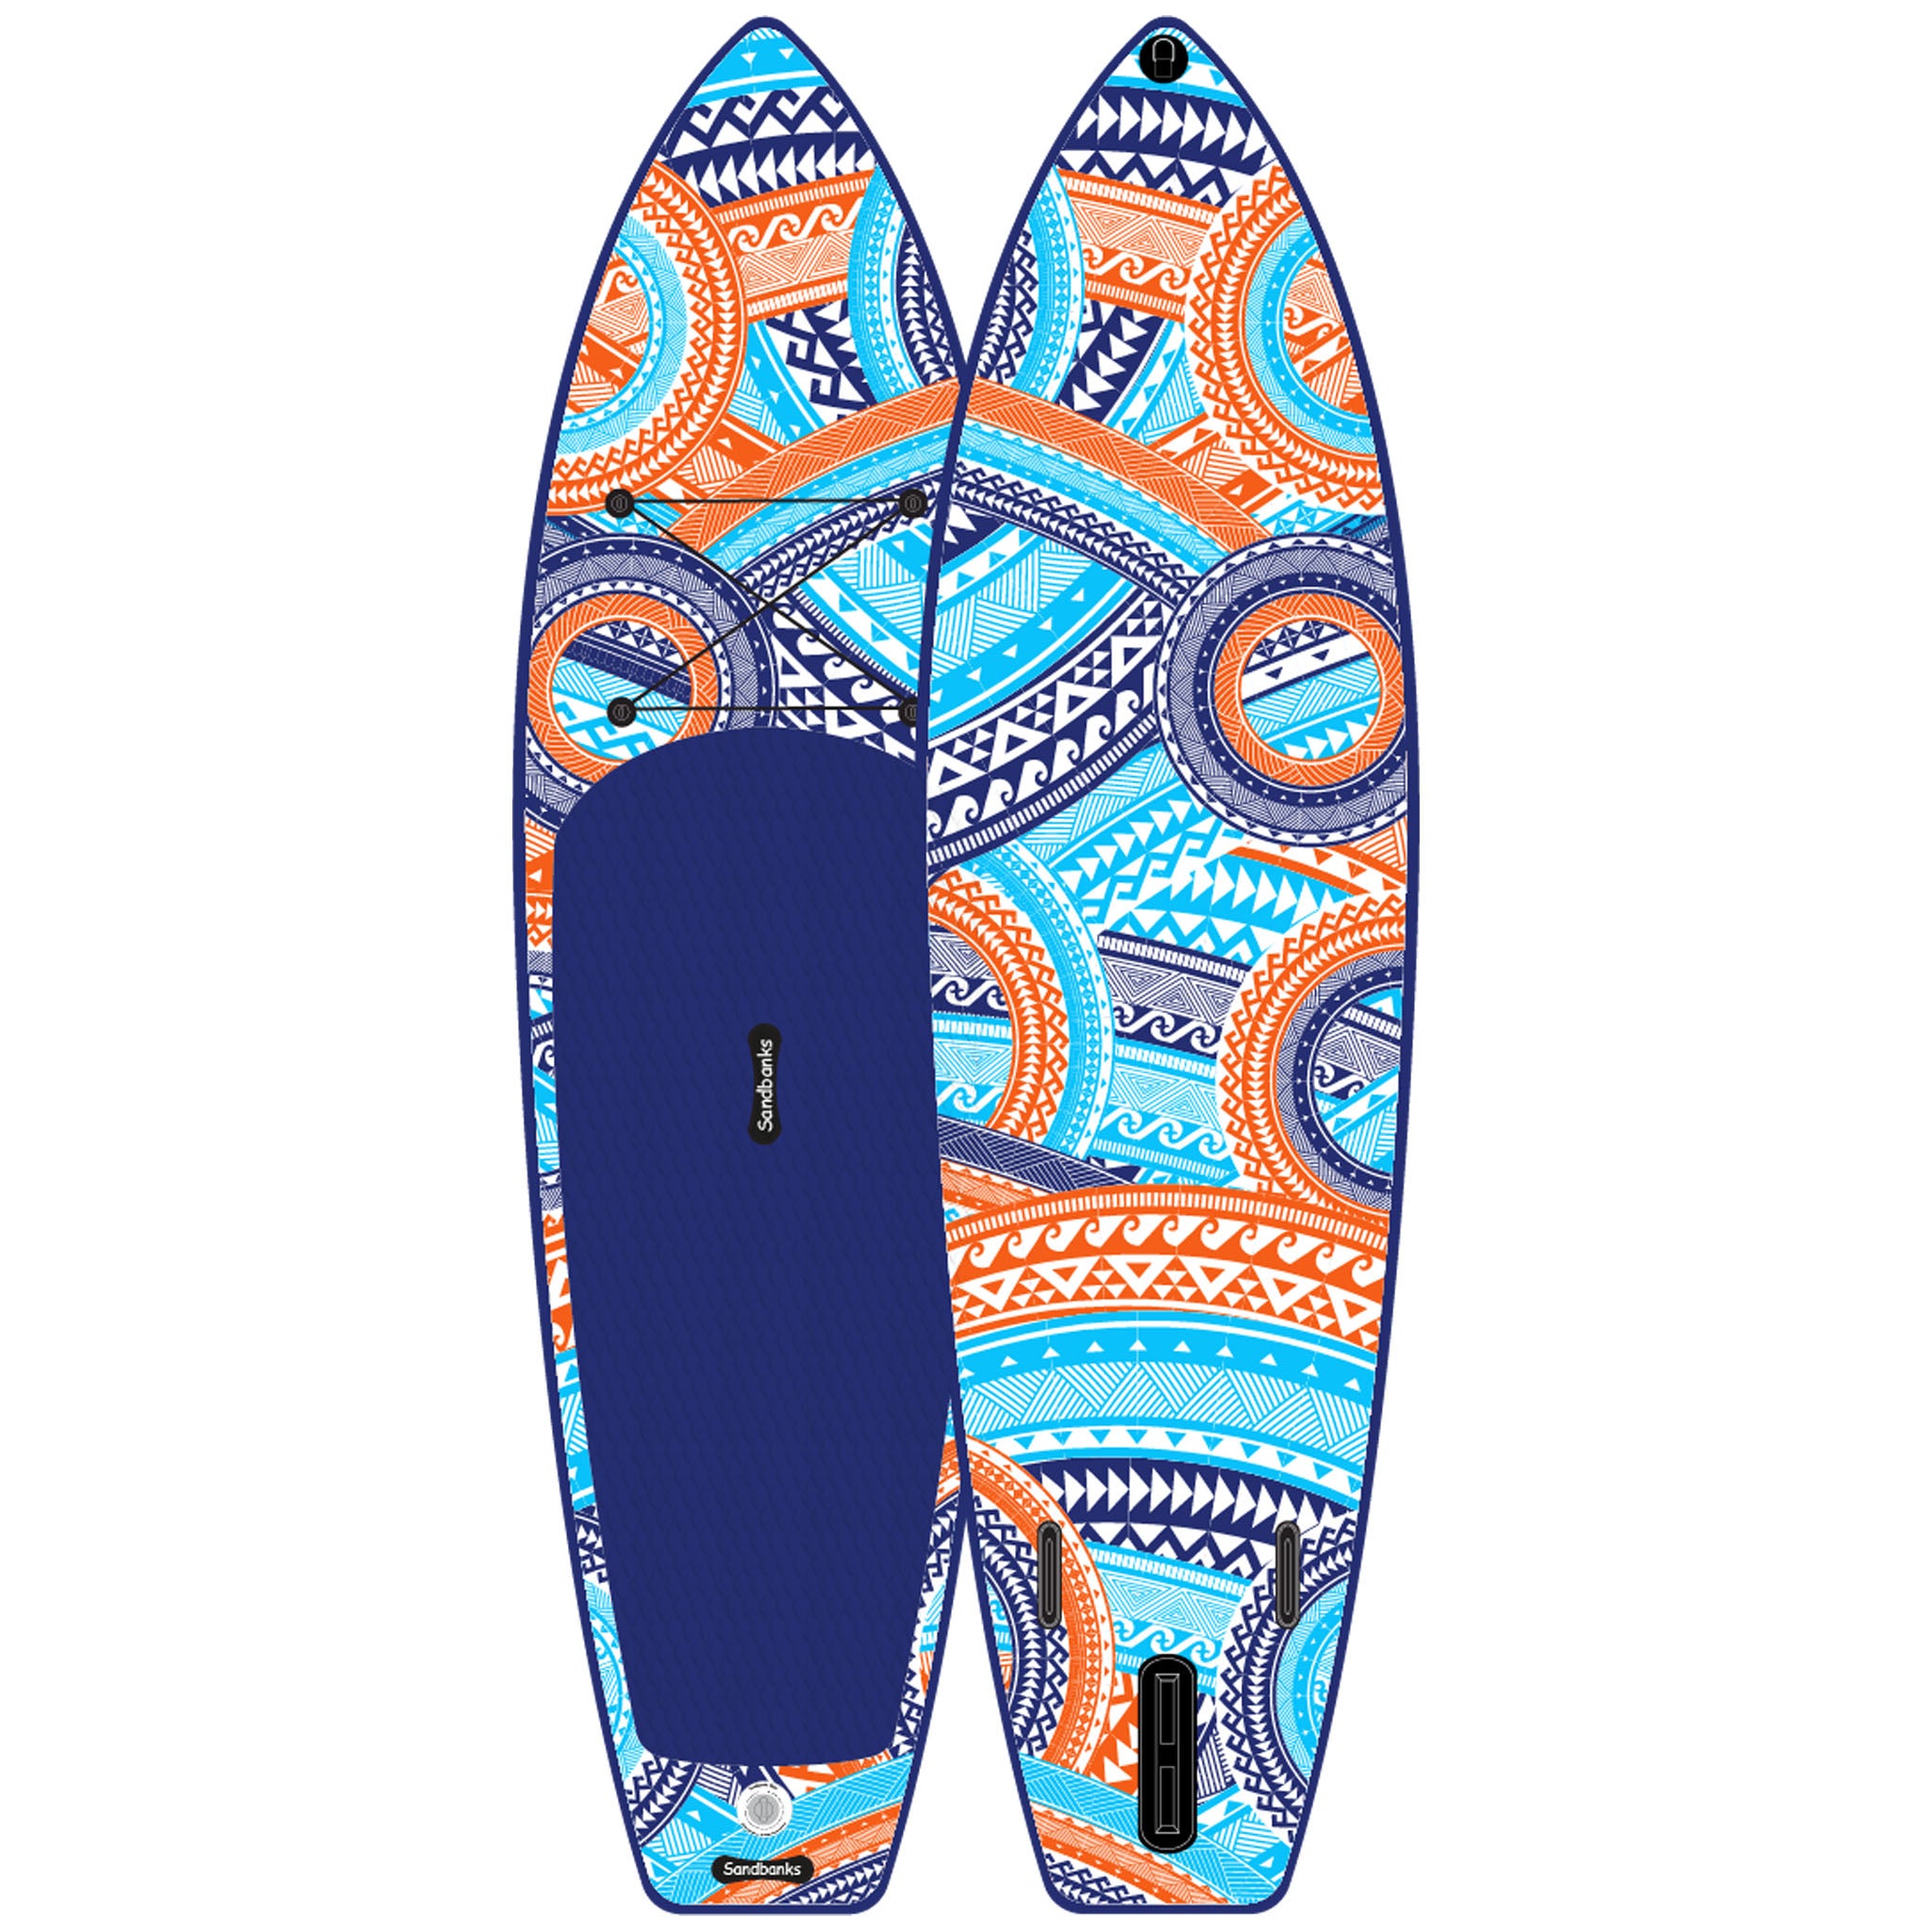 Sandbanks SUP Ultimate Art 10' 6" iSUP Paddle Board - Maui